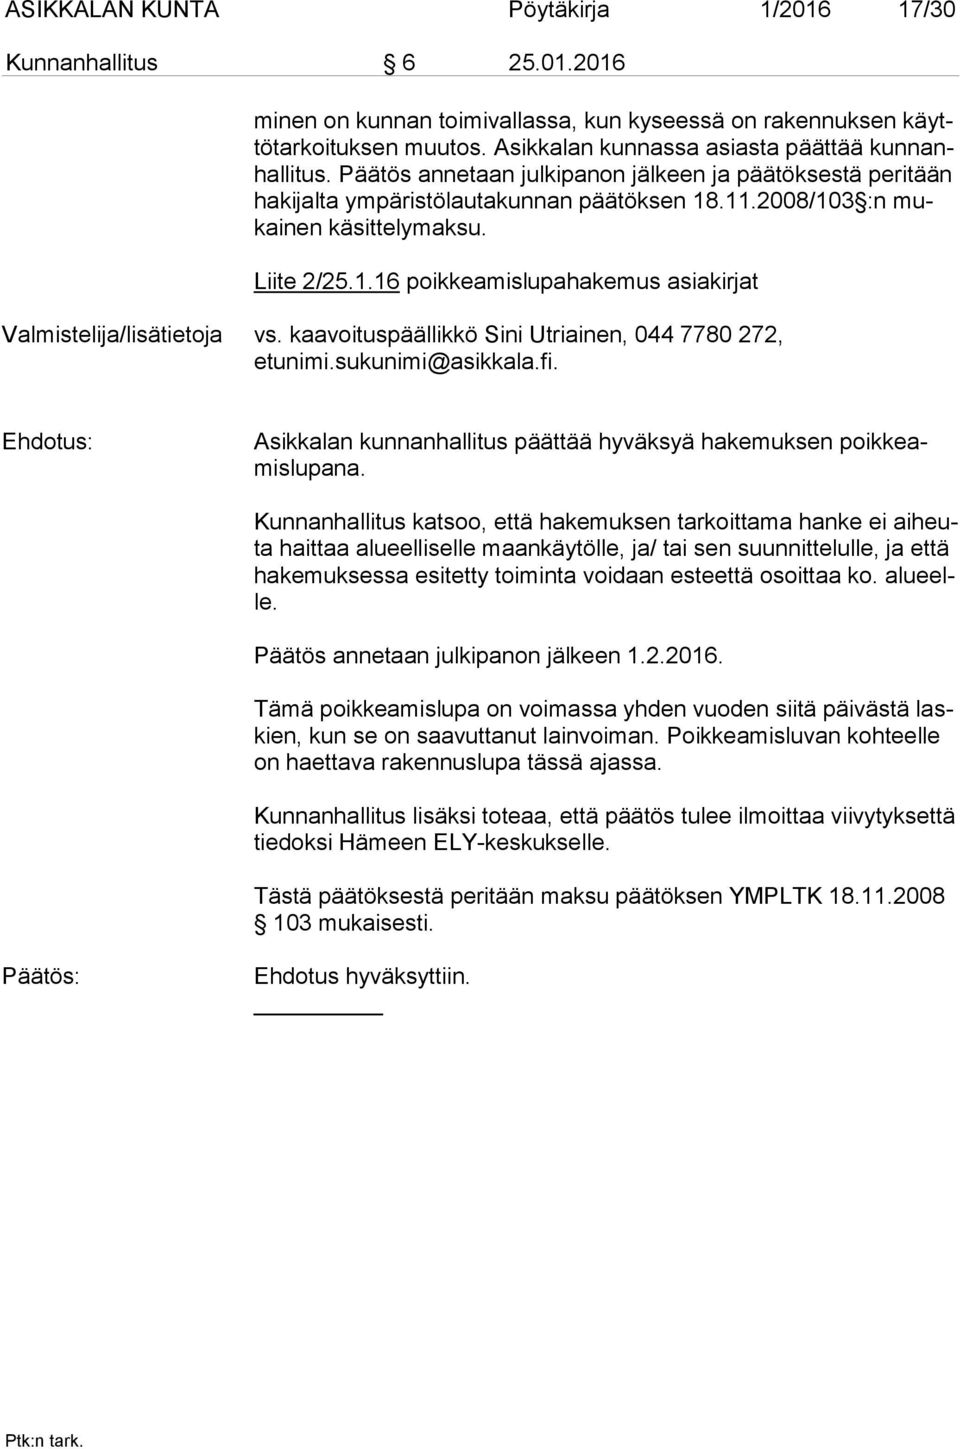 Liite 2/25.1.16 poikkeamislupahakemus asiakirjat Valmistelija/lisätietoja vs. kaavoituspäällikkö Sini Utriainen, 044 7780 272, etunimi.sukunimi@asikkala.fi.